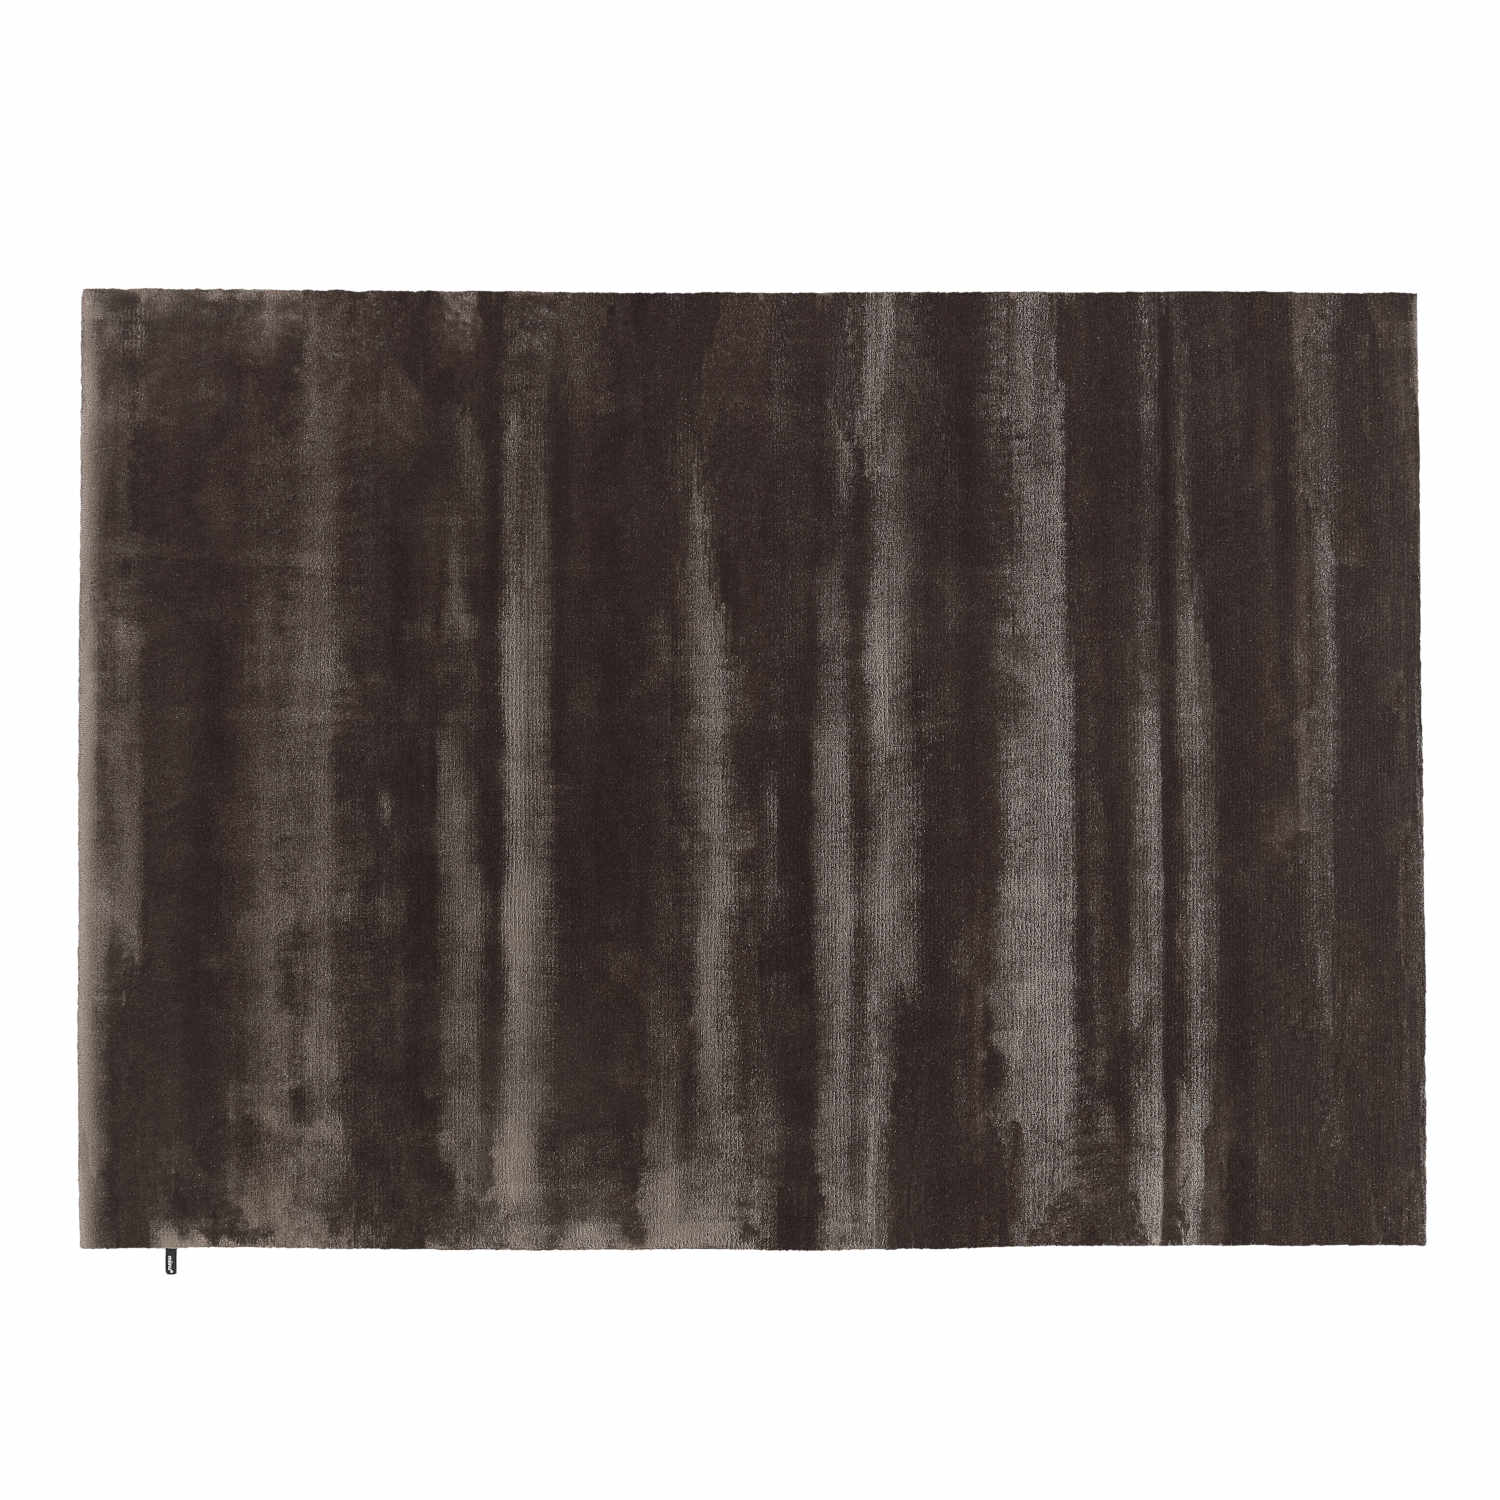 FlatRes Teppich, Grösse 300 x 400 cm, Farbe glacier gray von miinu